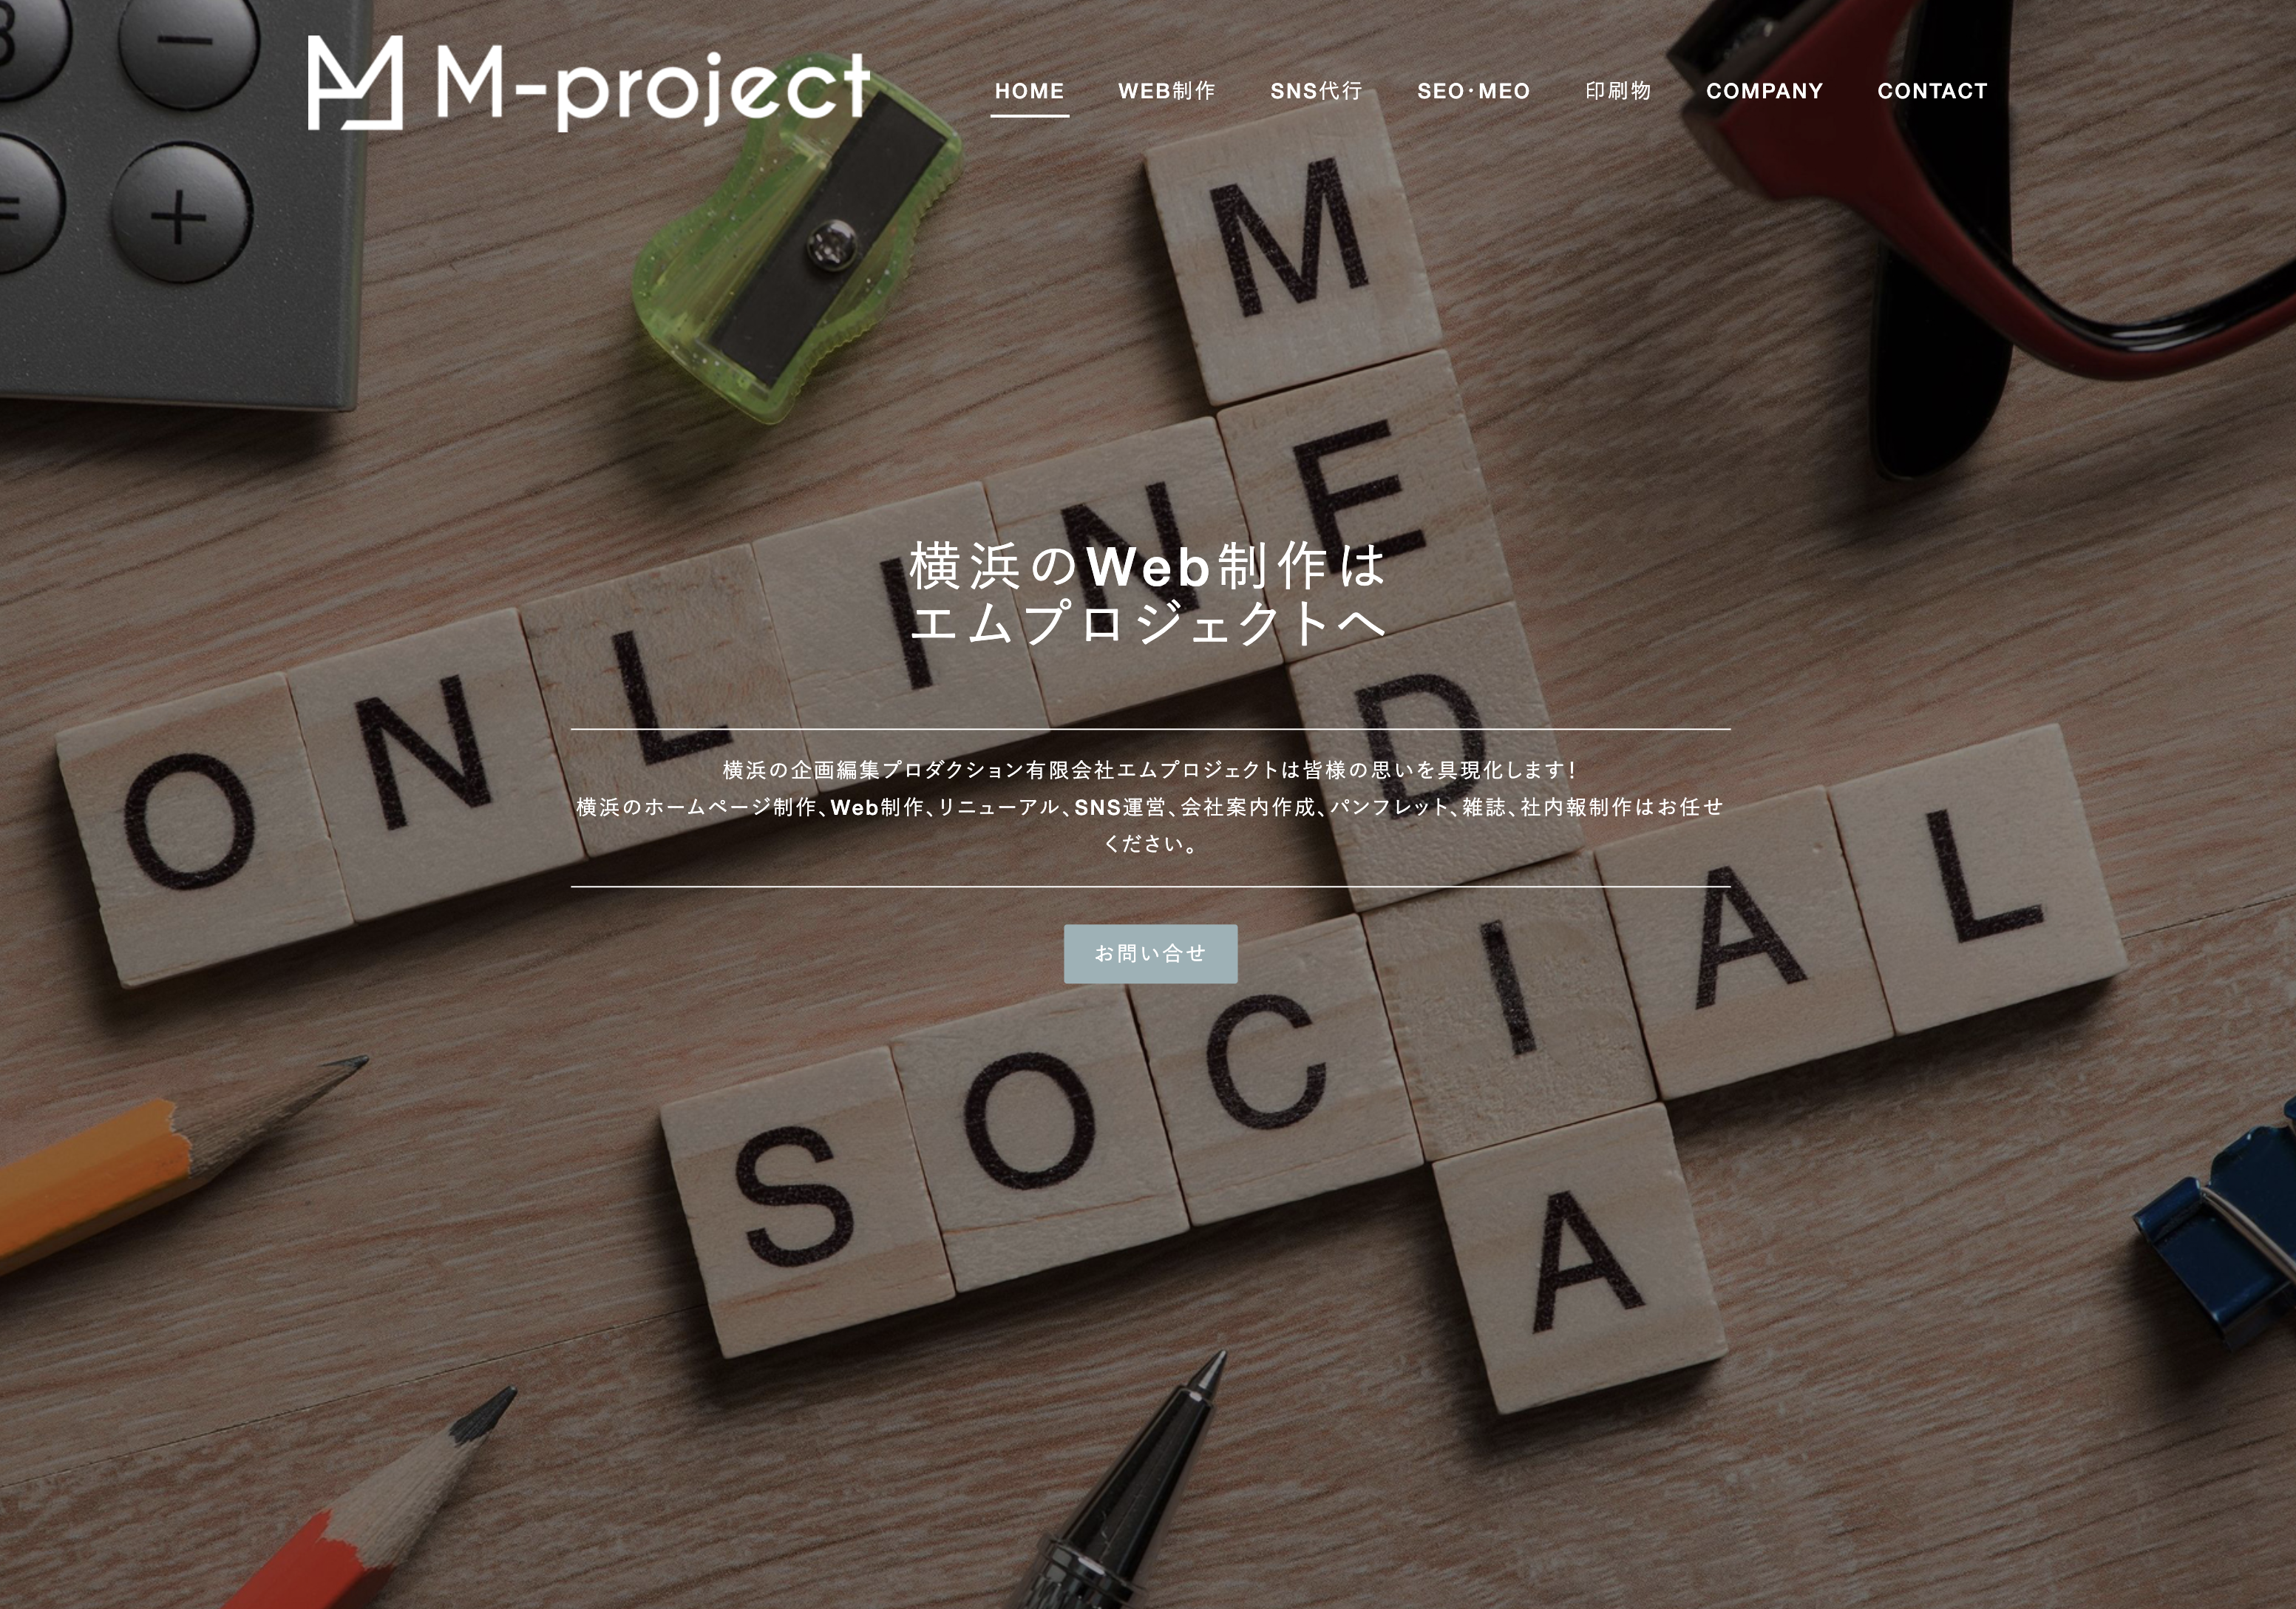 有限会社エムプロジェクトの有限会社エムプロジェクト:Web広告サービス